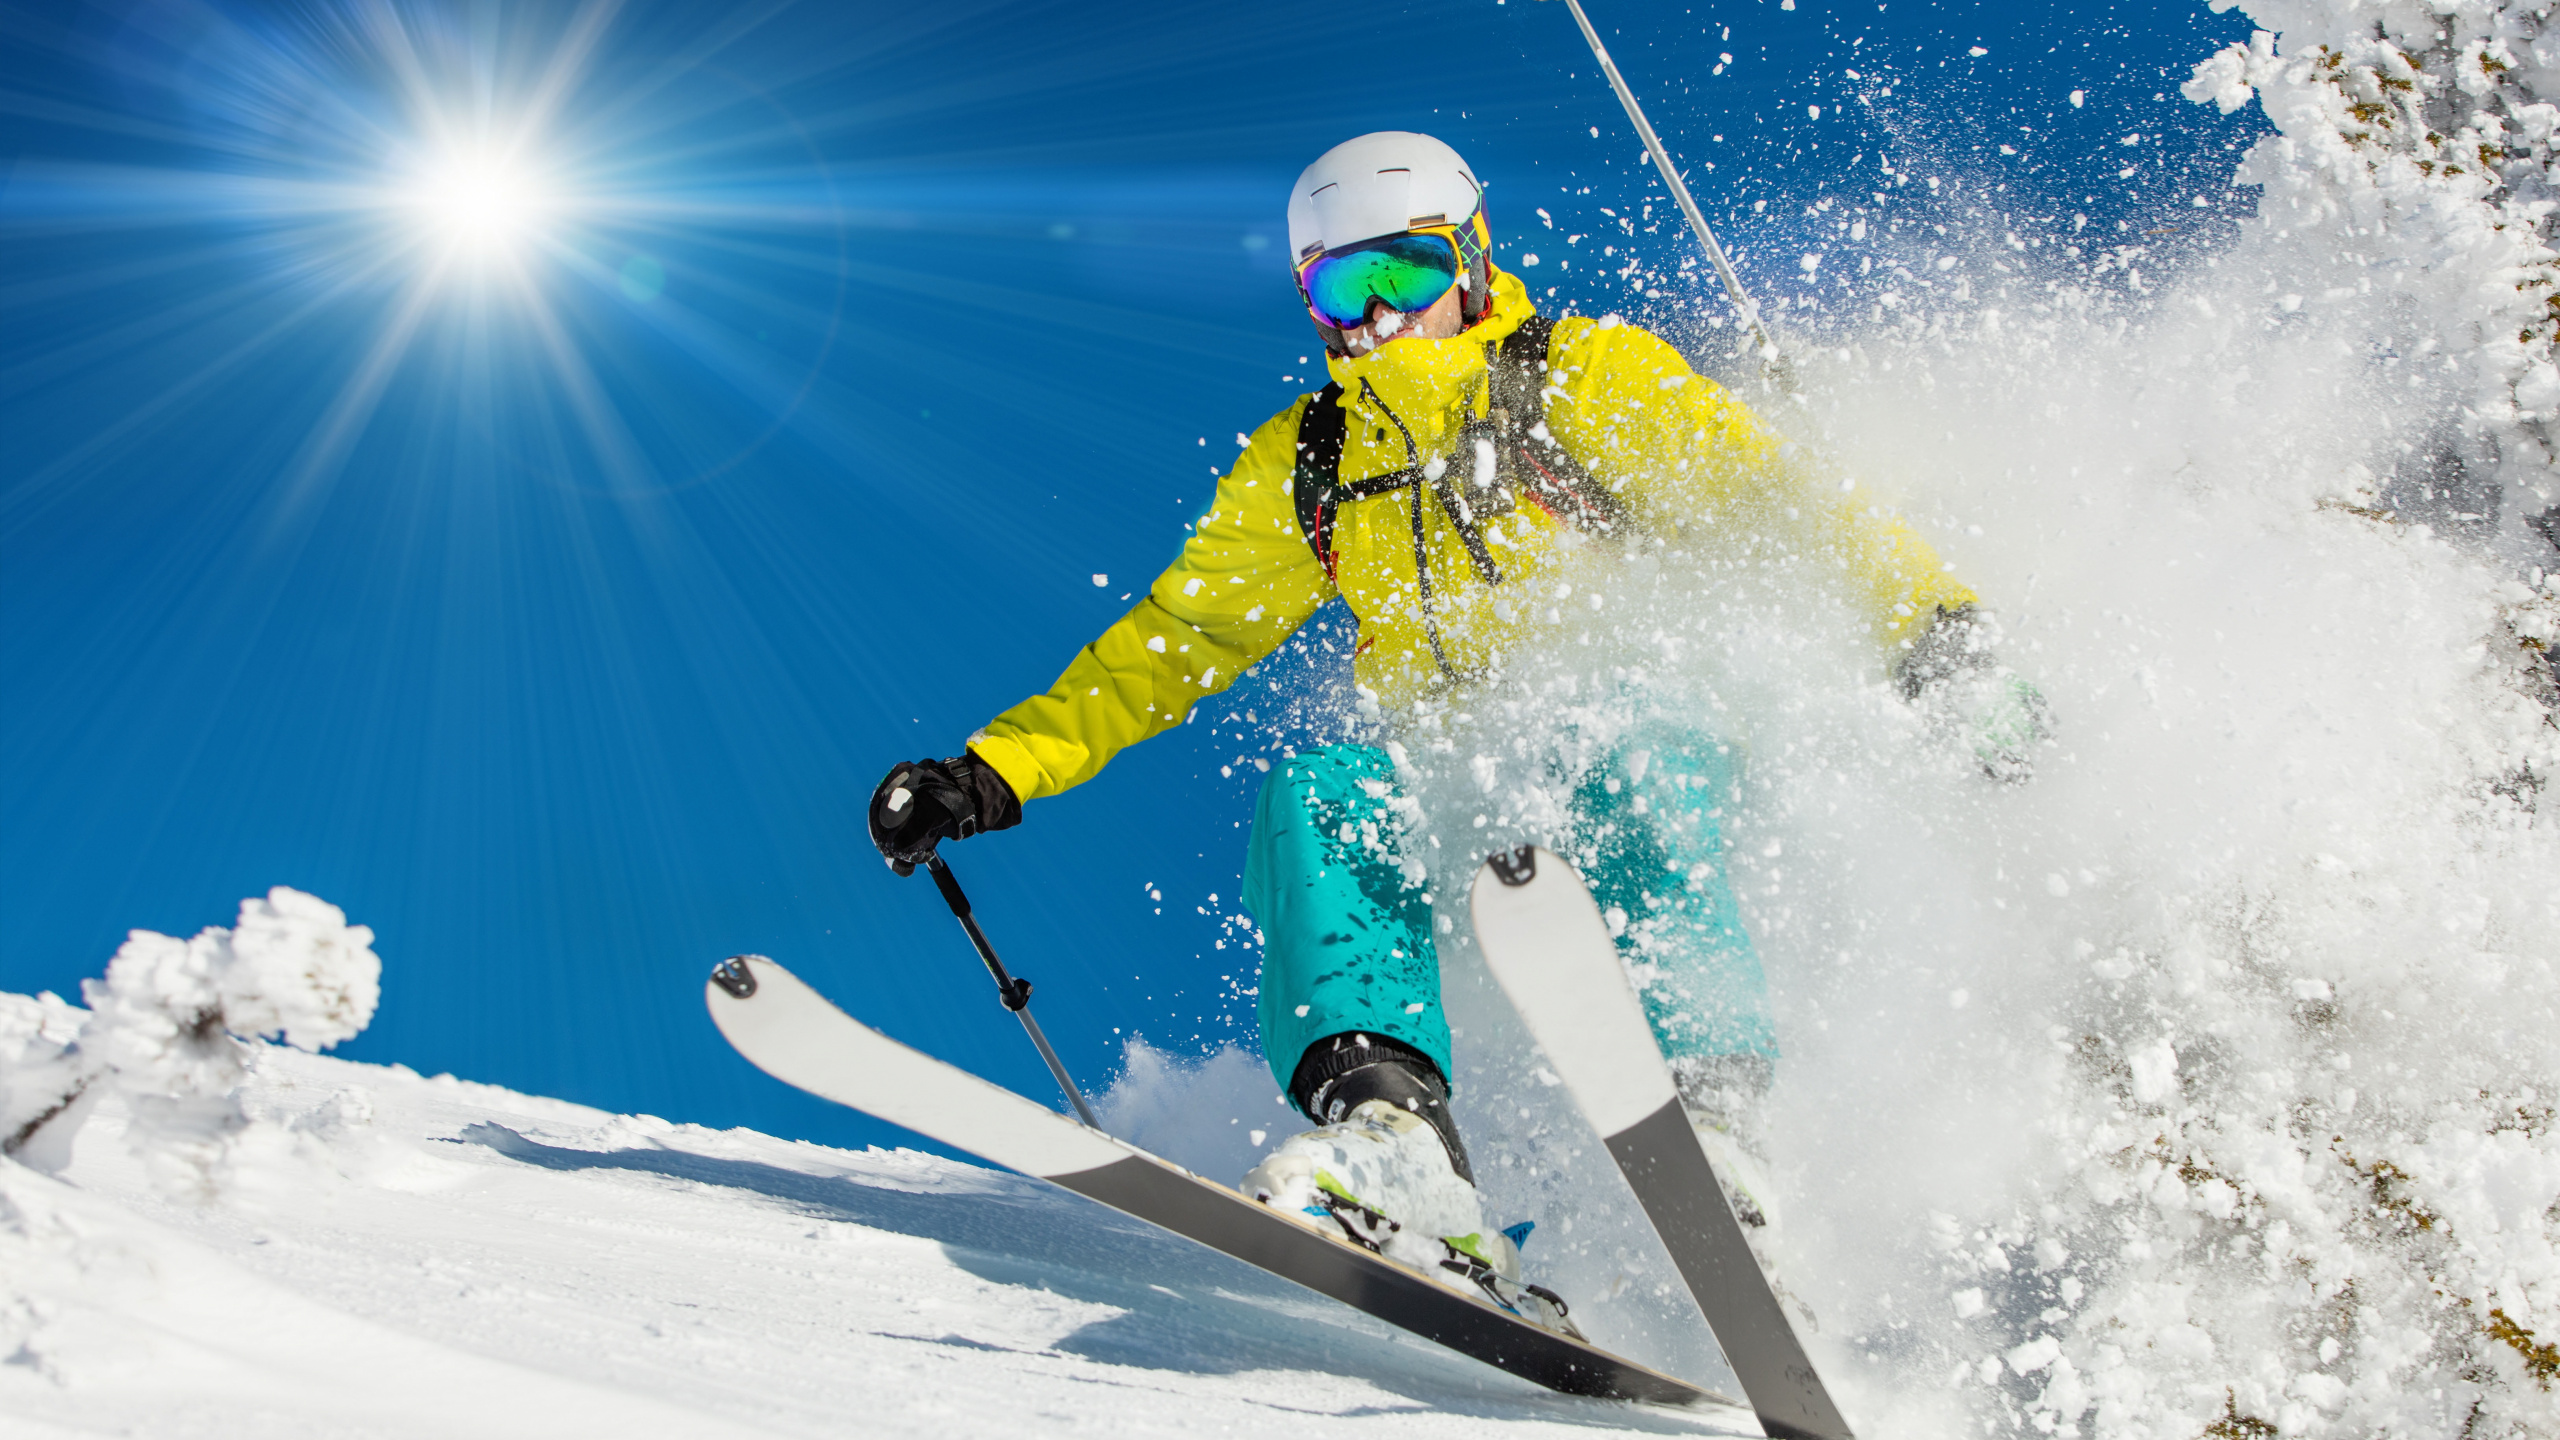 高山滑雪, 滑雪, 极限运动, 自由式滑雪, 滑板滑雪 壁纸 2560x1440 允许